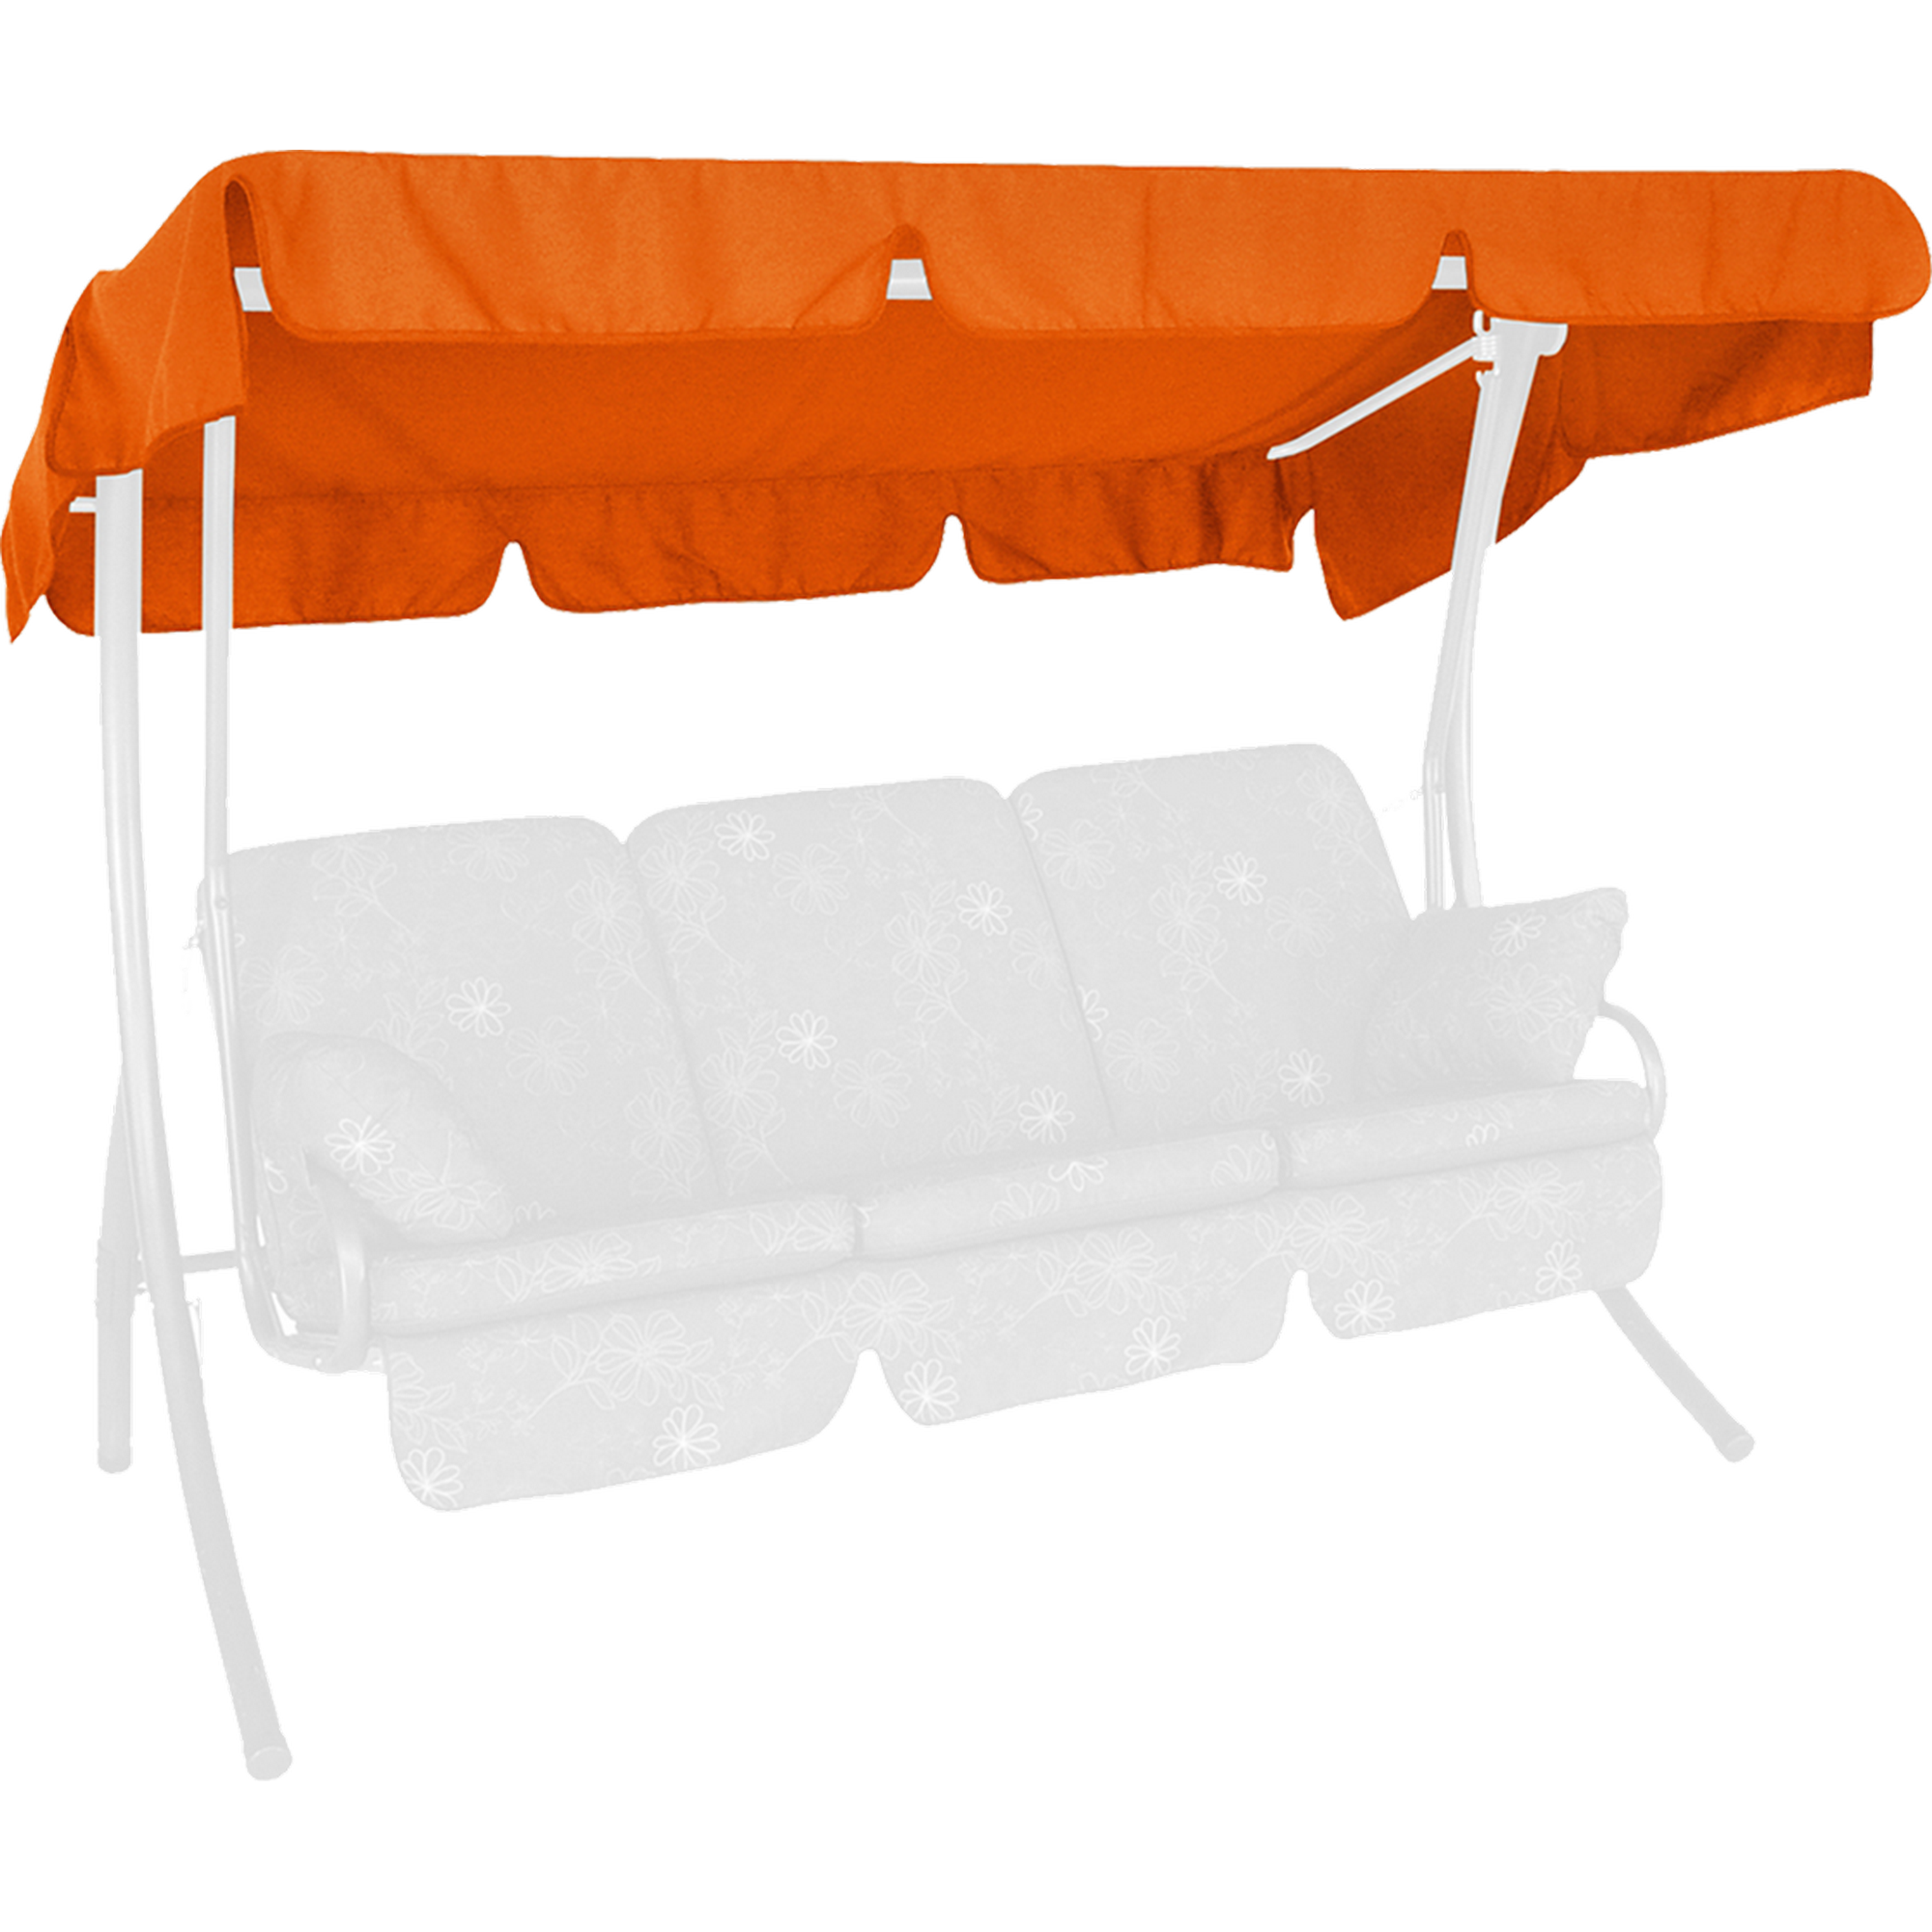 Sonnendach für 3-Sitzer Hollywoodschaukel Swingtex orange 210 x 145 cm + product picture